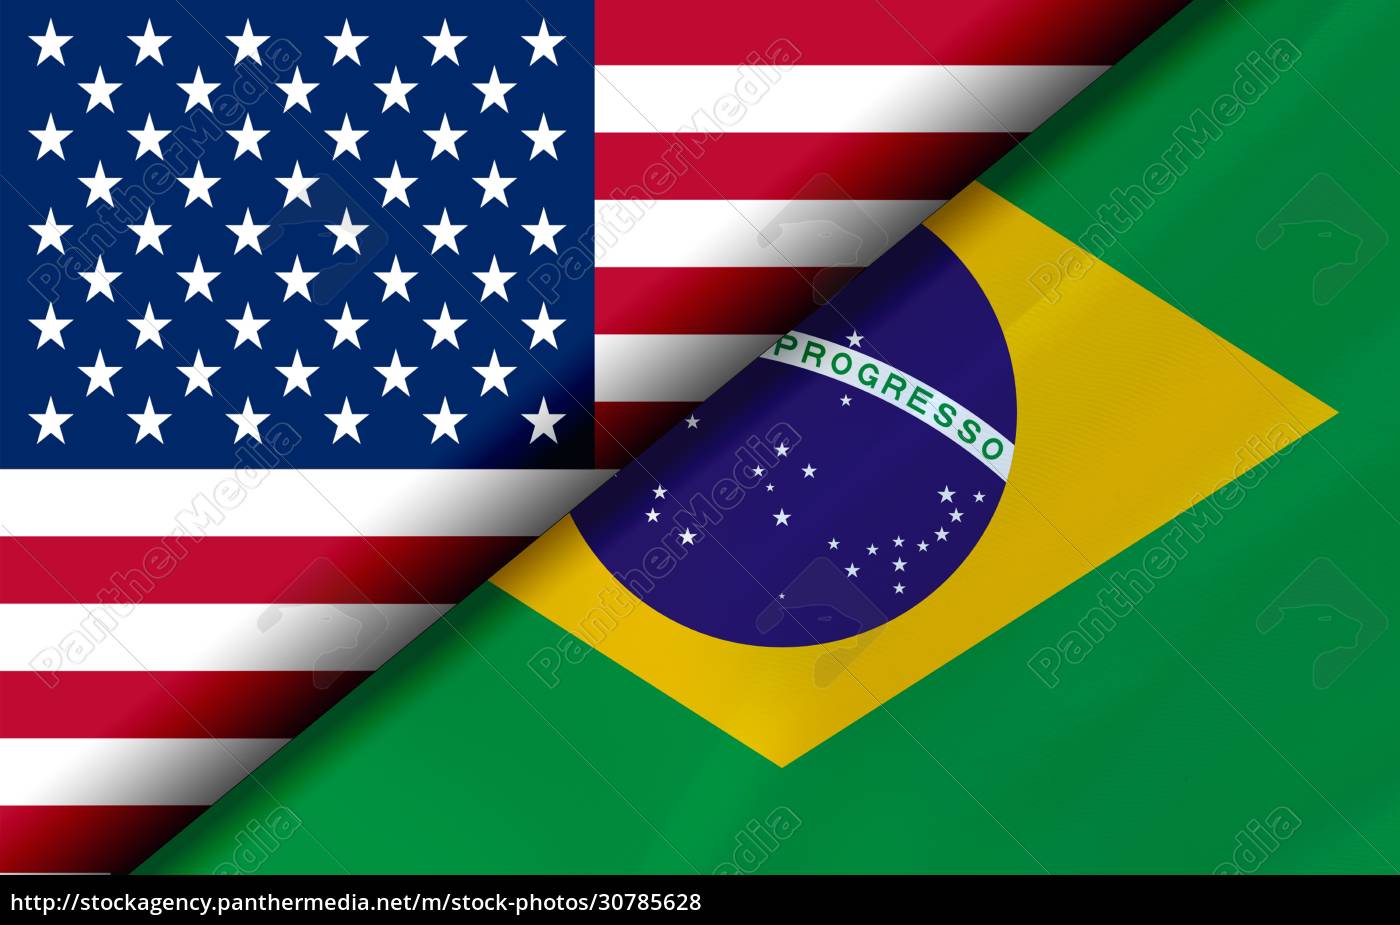 Bandeiras dos EUA e do Brasil divididas diagonalmente - Stockphoto  #30785628